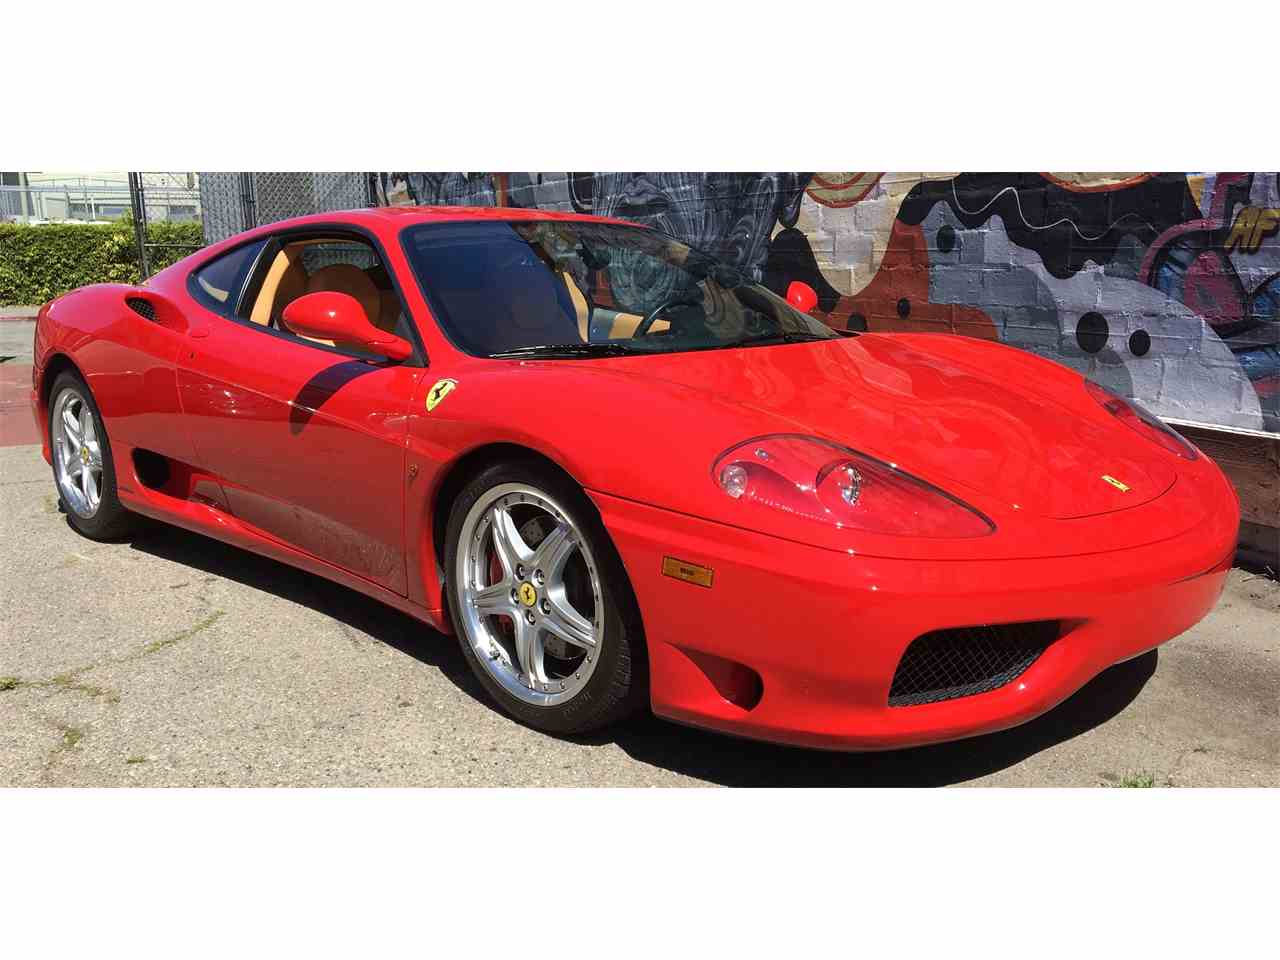 2001 Ferrari 360 for Sale | ClassicCars.com | CC-973484